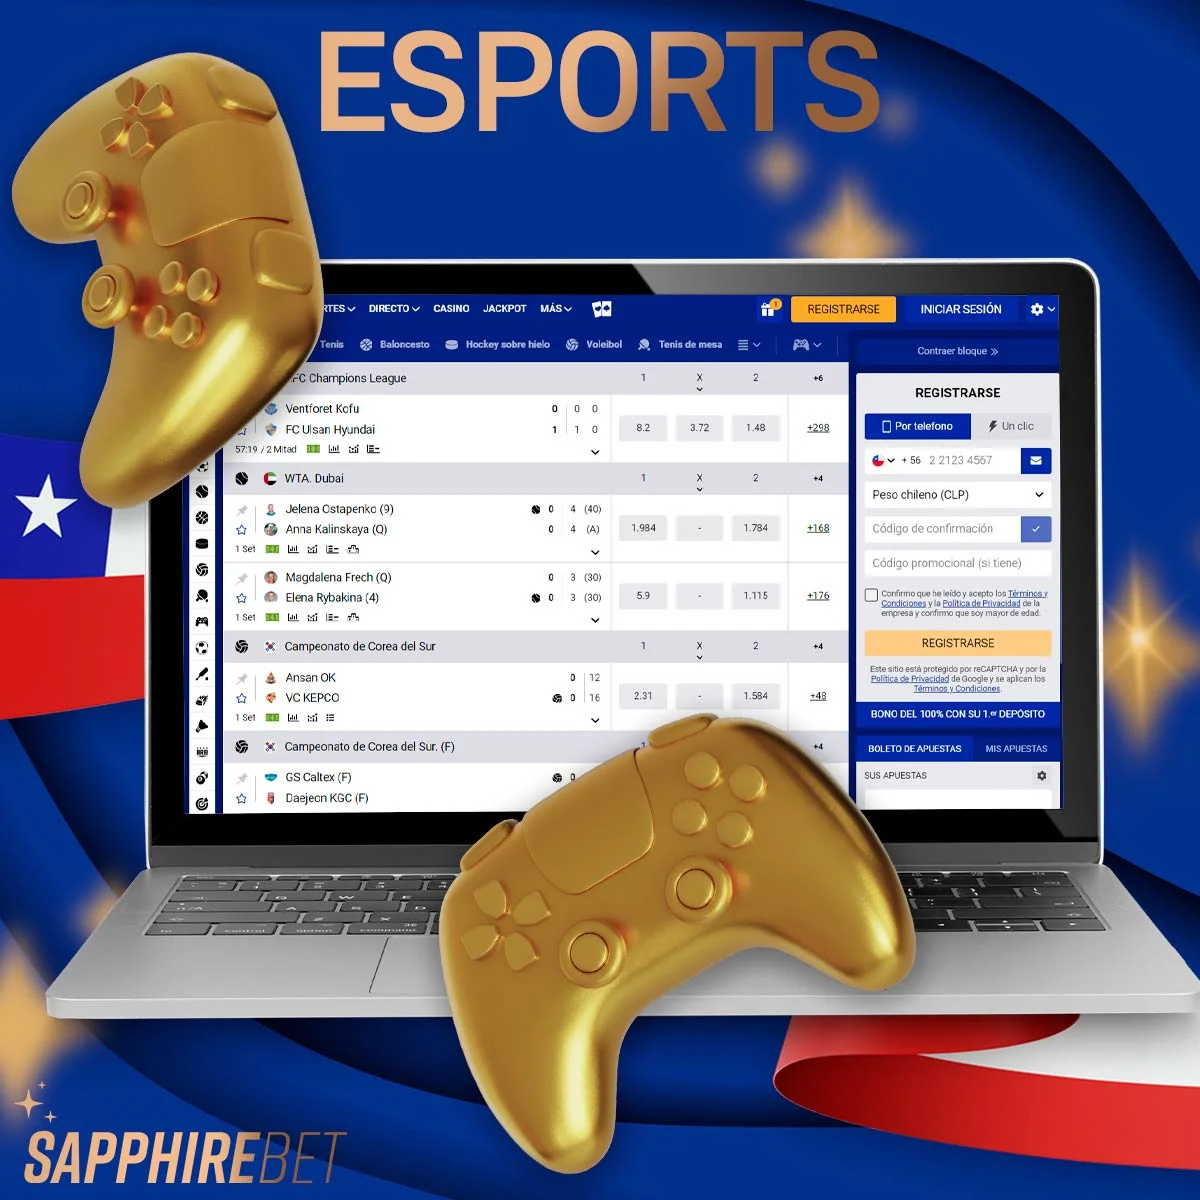 ¿Qué tipos de esports hay disponibles en Sapphirebet Chile?